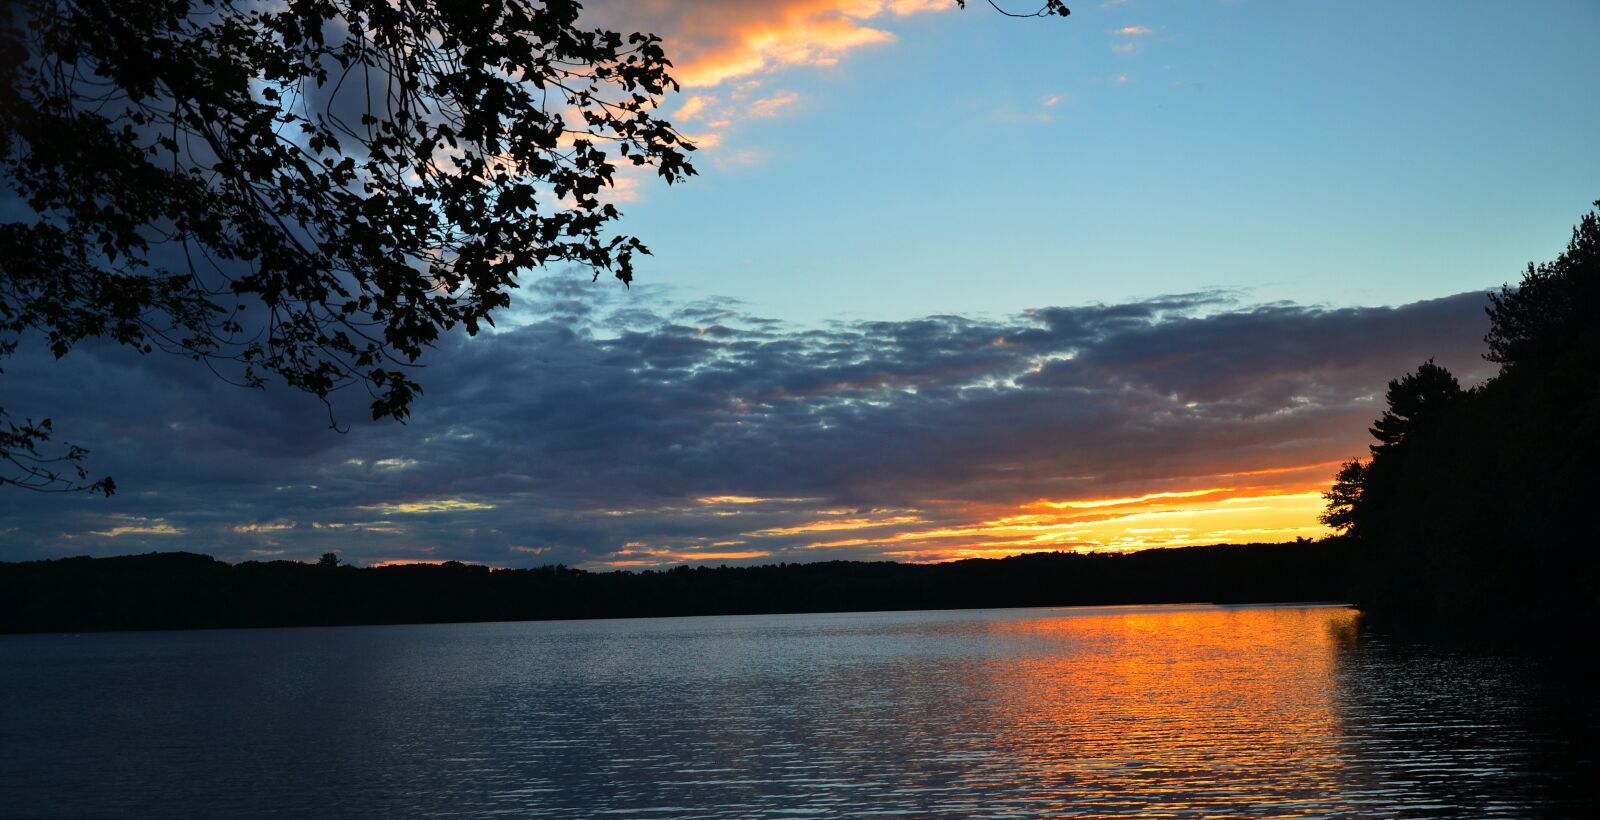 Nikon D7000 sample photo. Nature, sunset, water photography